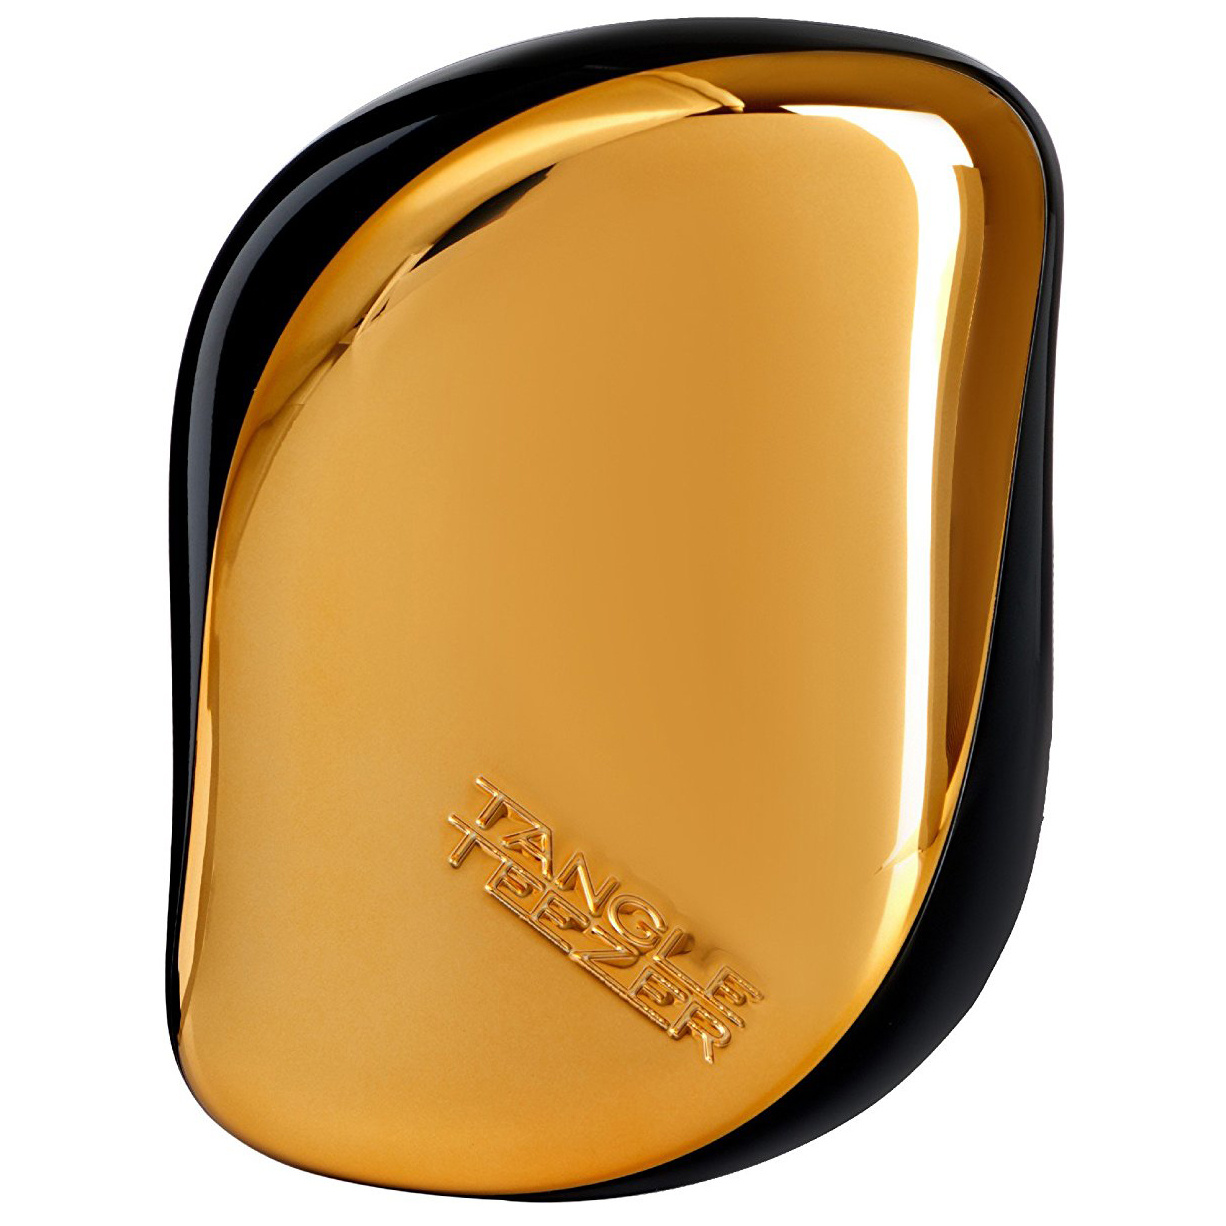 Расческа Tangle Teezer Compact Styler Bronze Chrome расческа для укладки феном tangle teezer easy dry